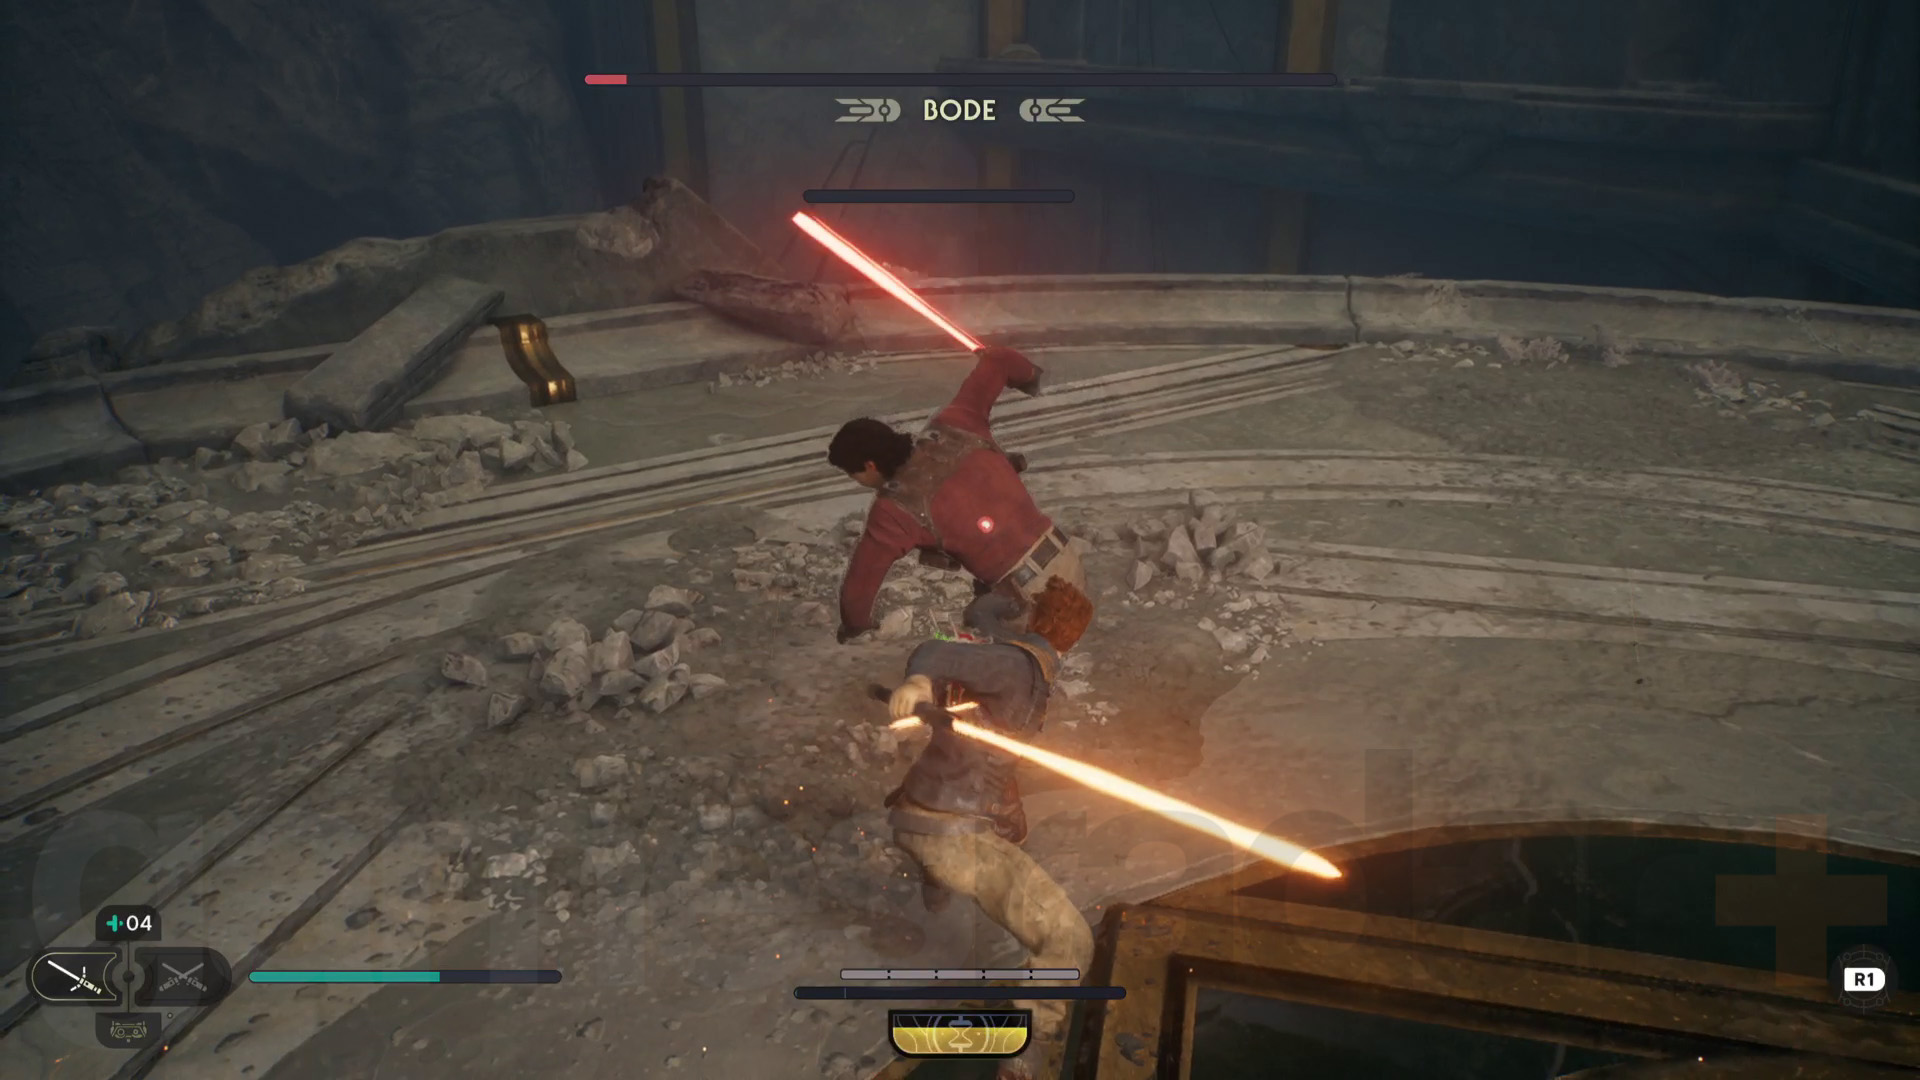 Star Wars Jedi Survivor Tanalorr walkthrough Cal și Bode își scot săbiile laser pentru o luptă